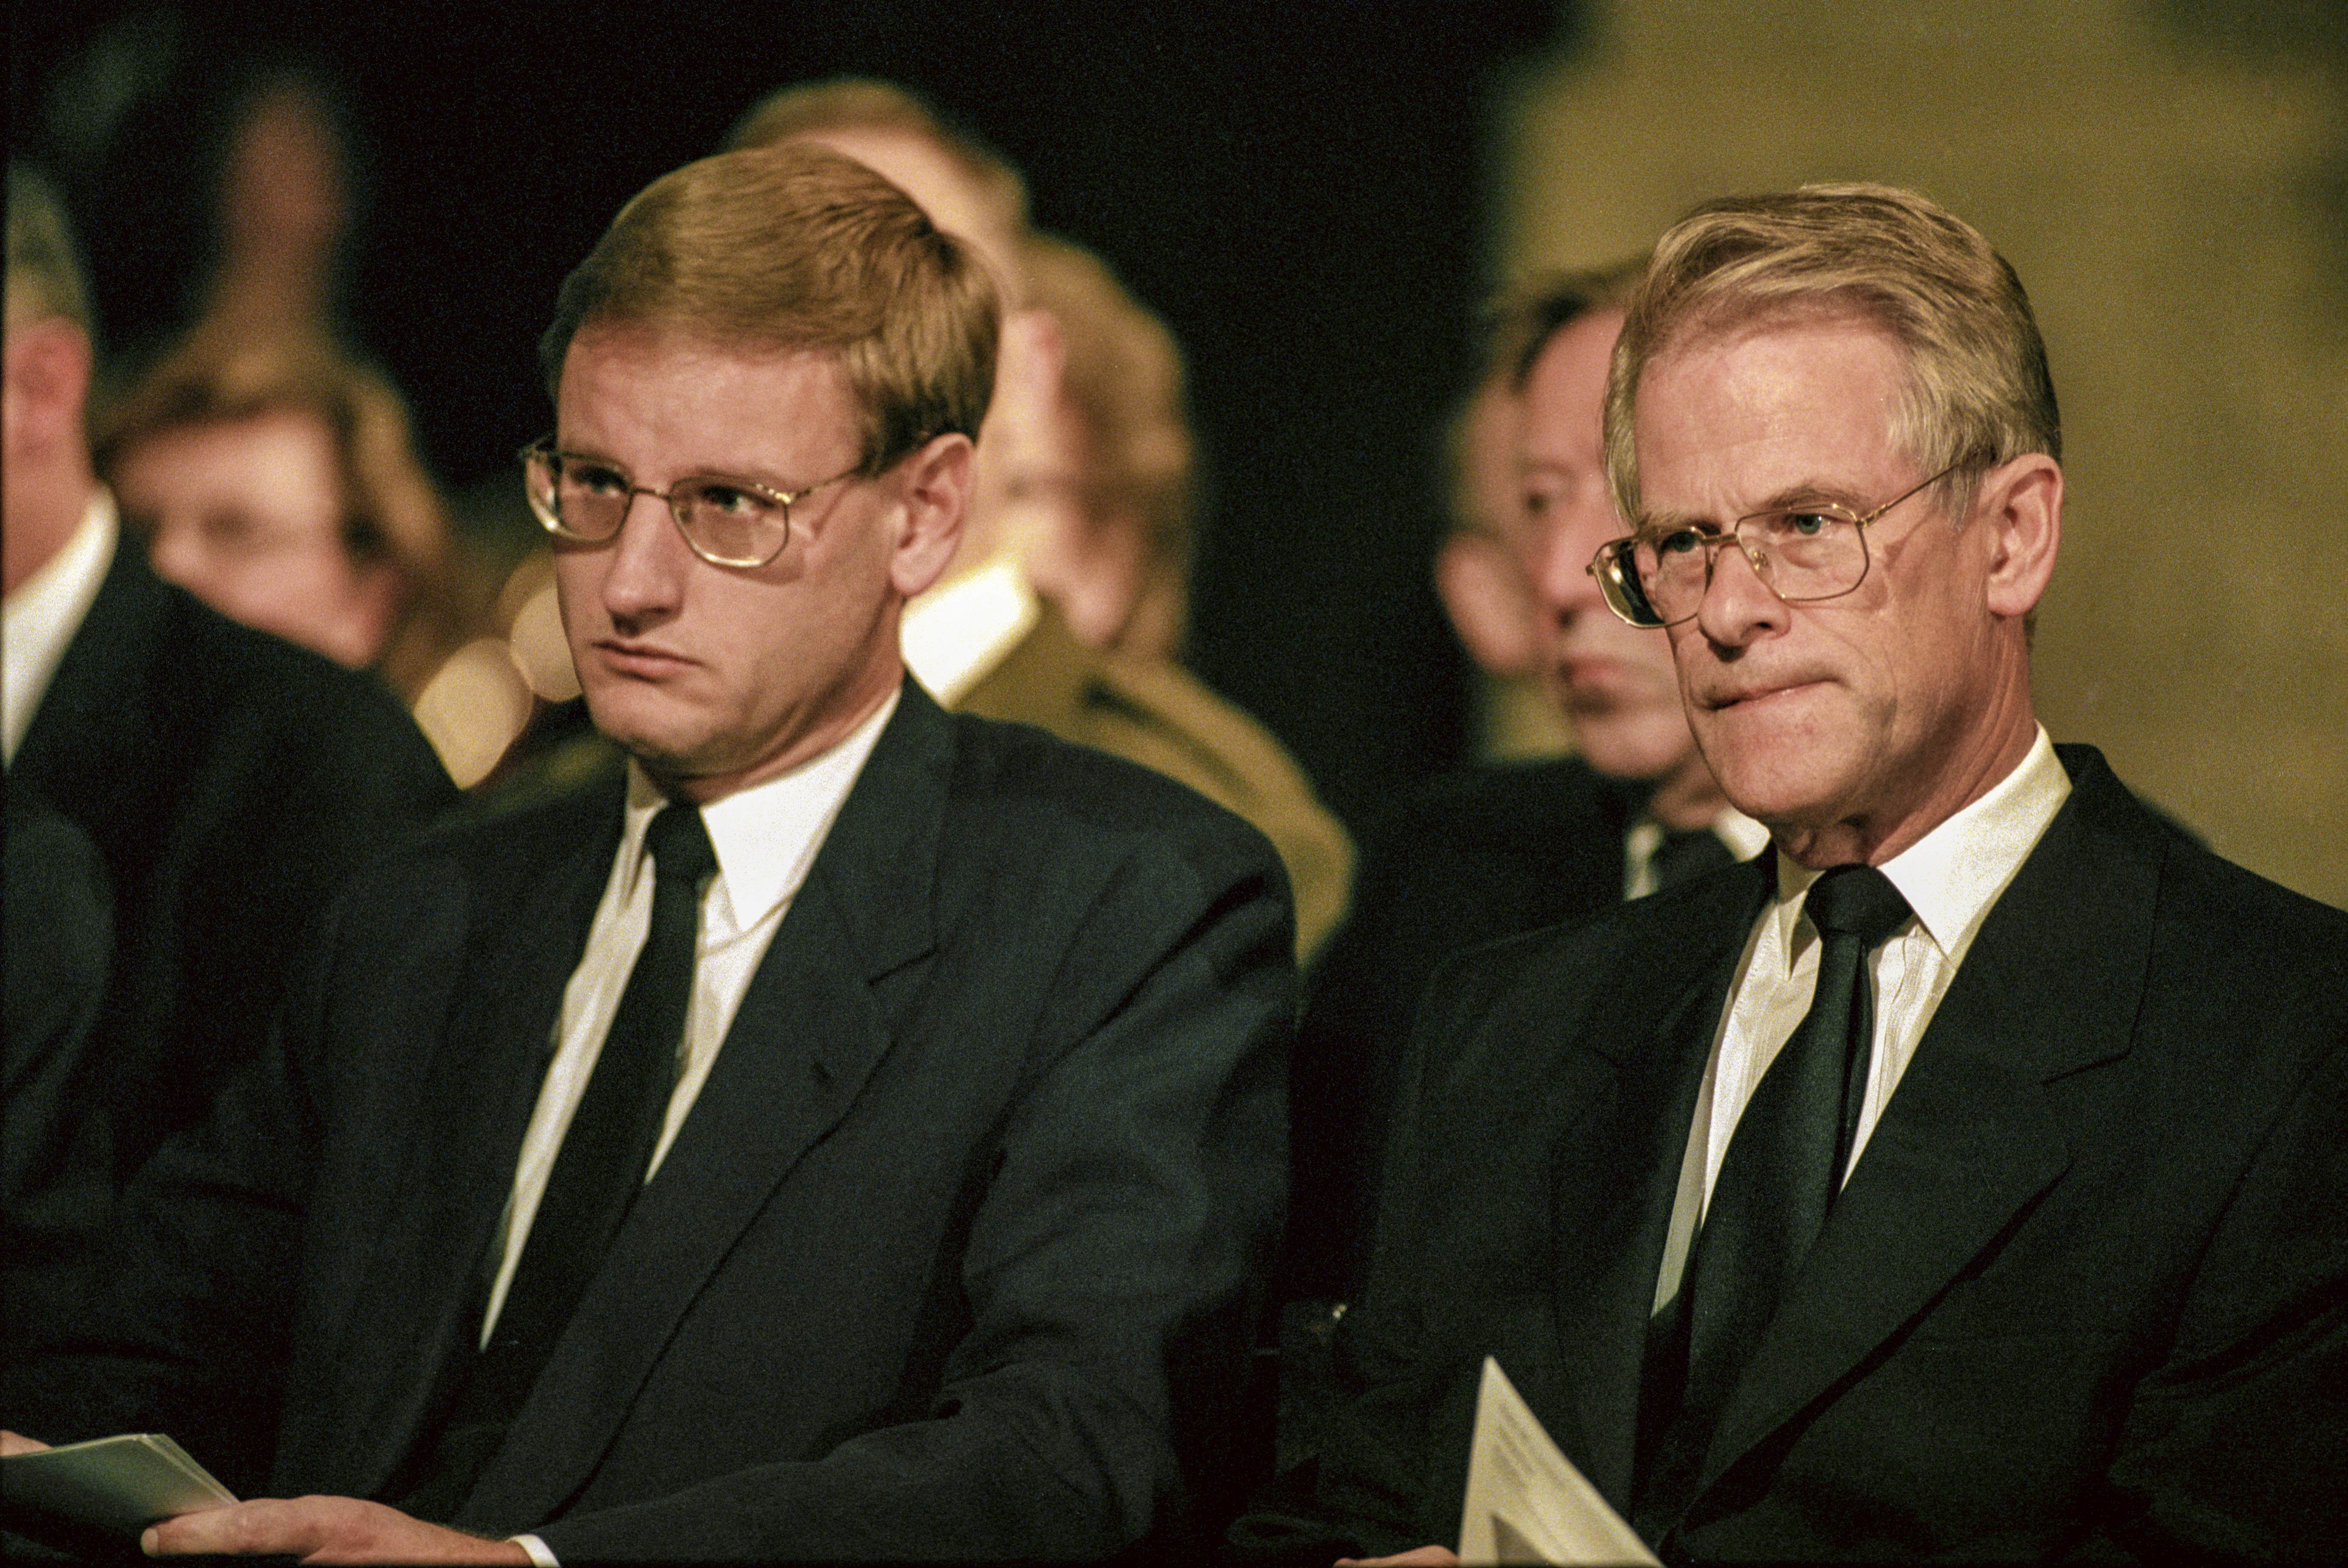 Den vid tillfället avgående statsministern Carl Bildt och tillträdande statsminister Ingvar Carlsson under en minnesgudstjänst. 